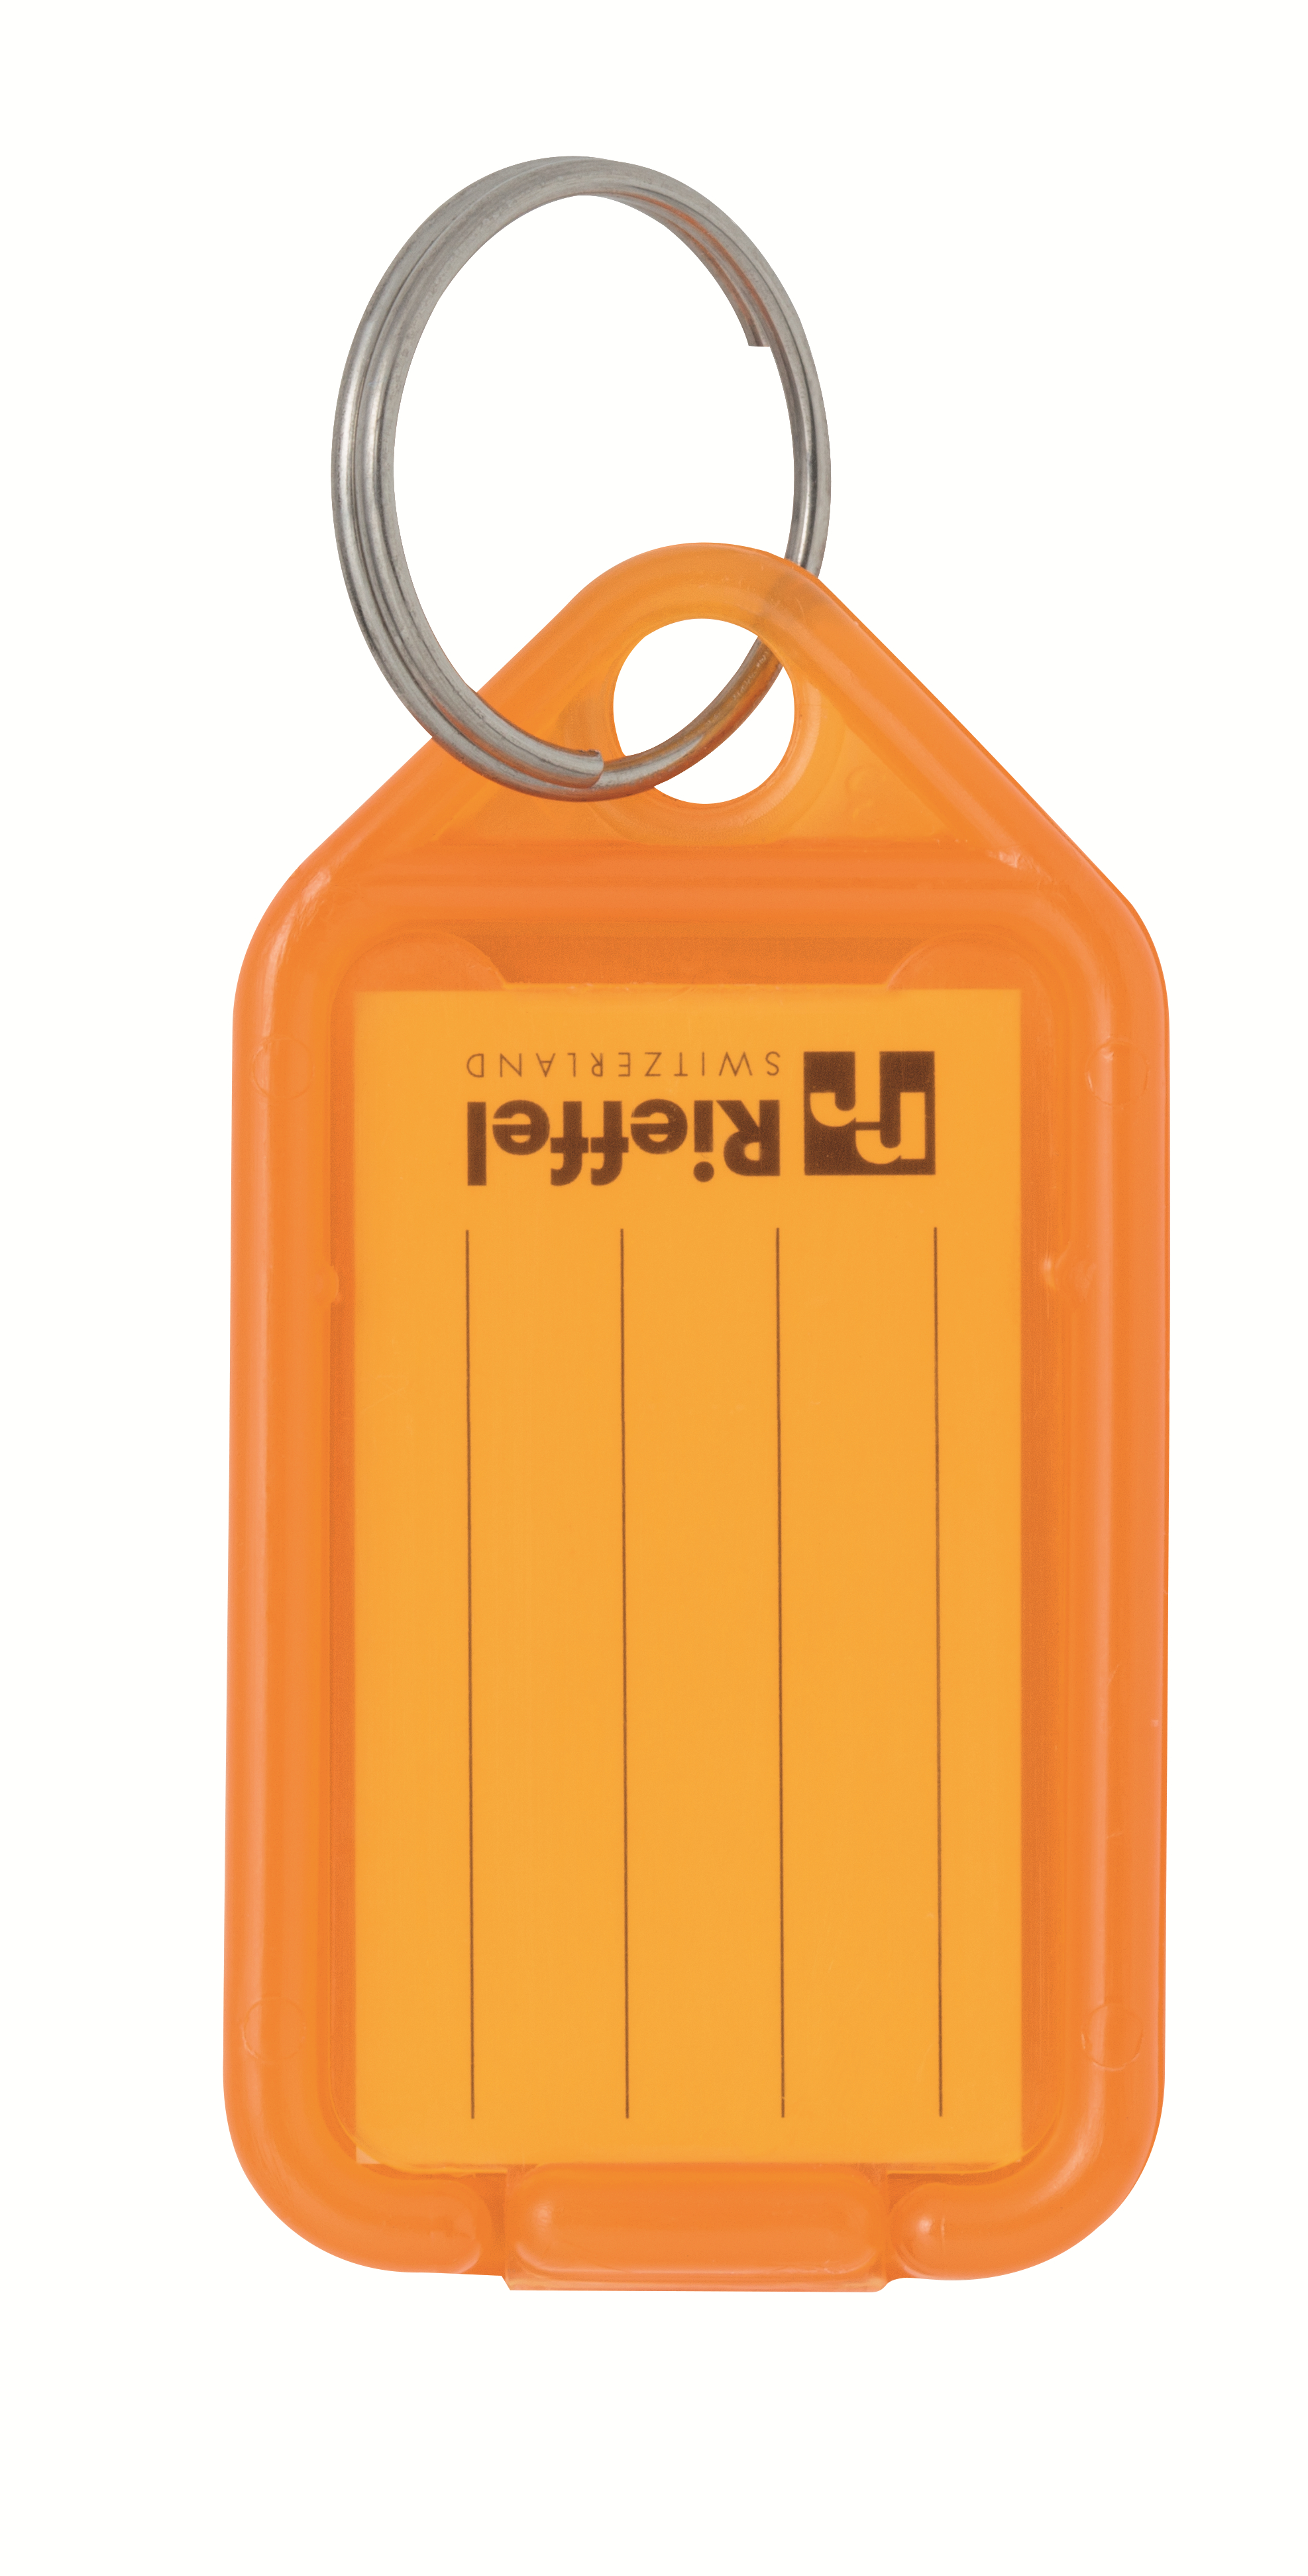 RIEFFEL SWITZERLAND Etiquettes clé 38x22mm KT 1000 ORANGE orange 100 pcs.